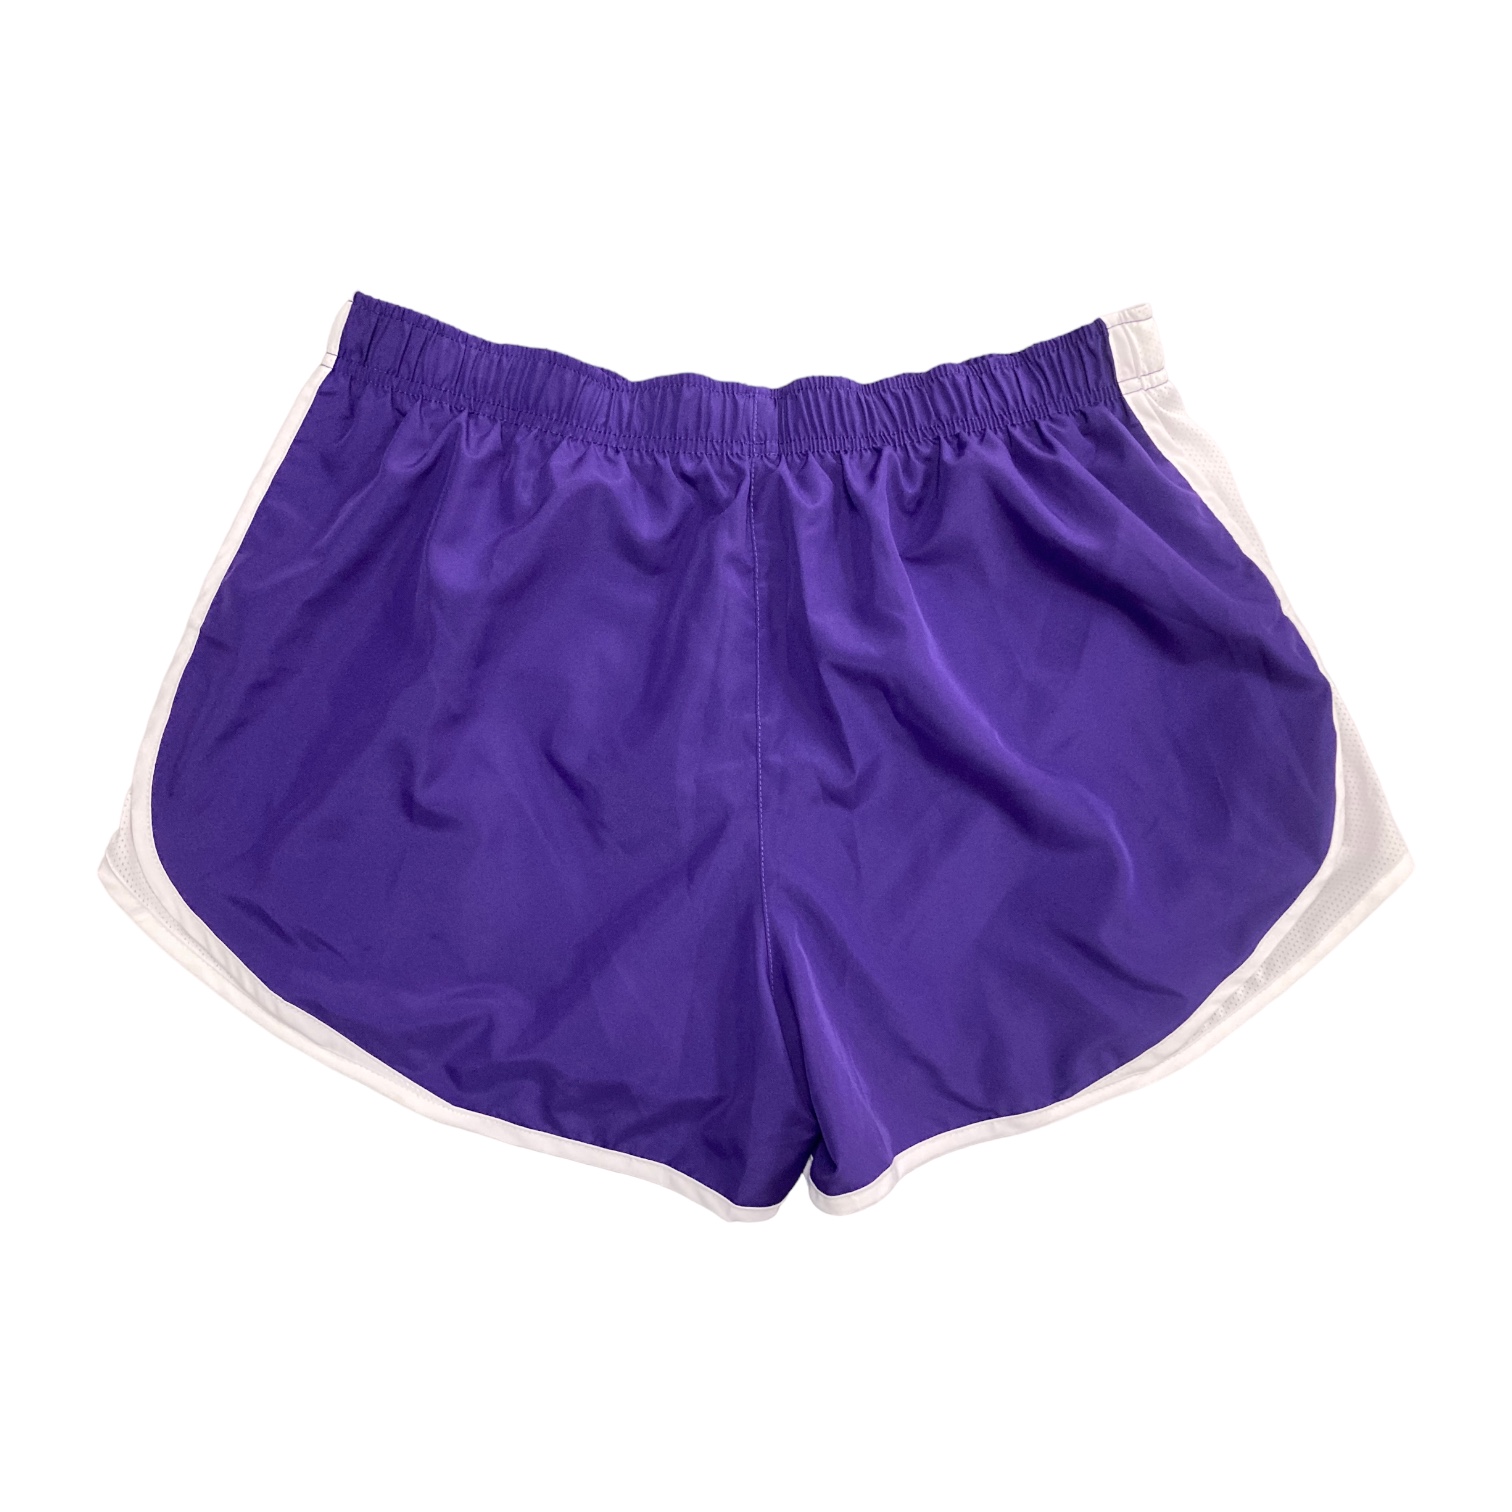 Nike Women's Lightweight Dry Tempo Running Shorts (Purple/White, XS) - image 2 of 2